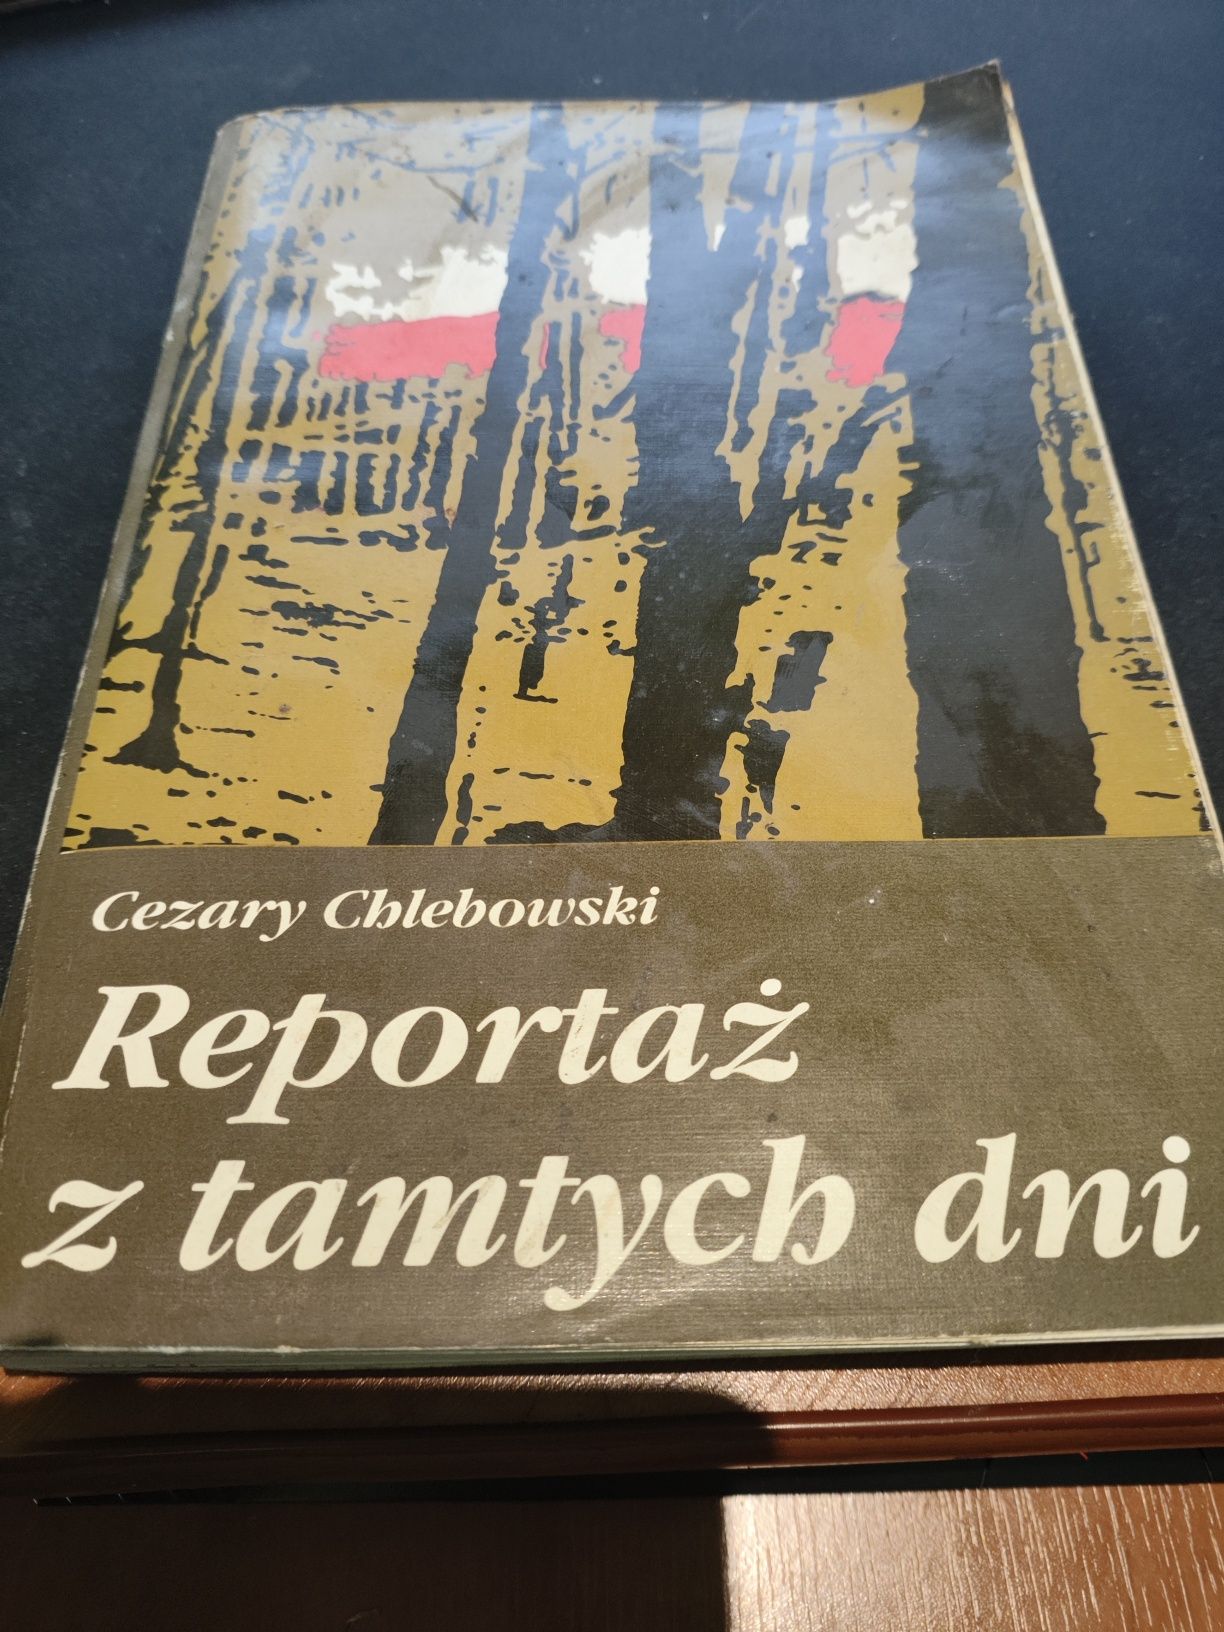 Cezary Chlebowski - Reportaż z tamtych dni